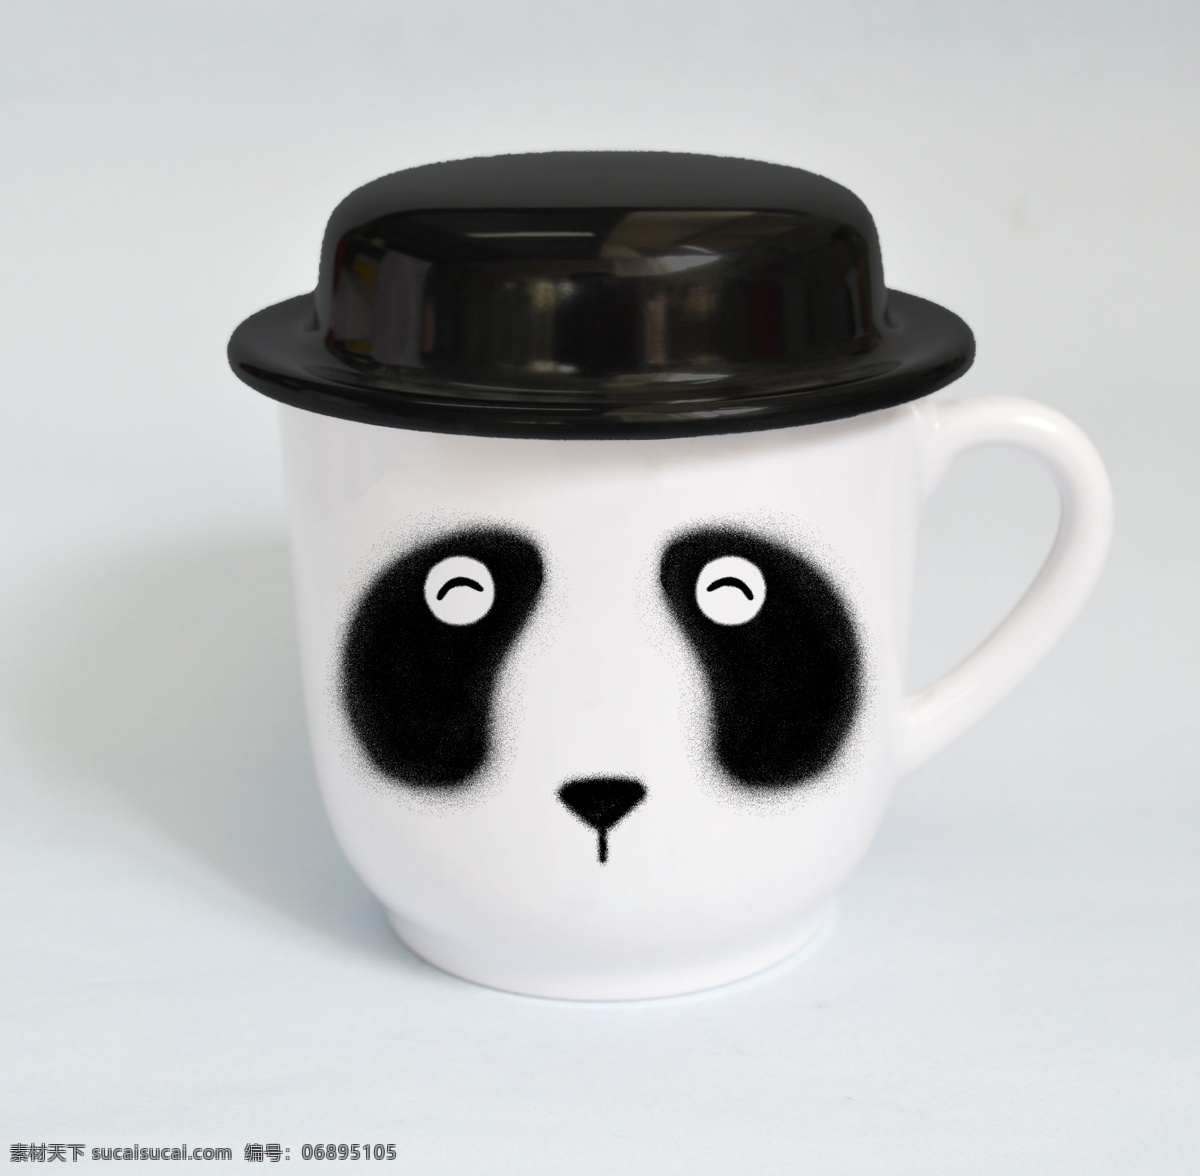 美耐皿 密胺 帽子 杯 可爱 熊猫 图 花纸 杯子 小清新 灰色